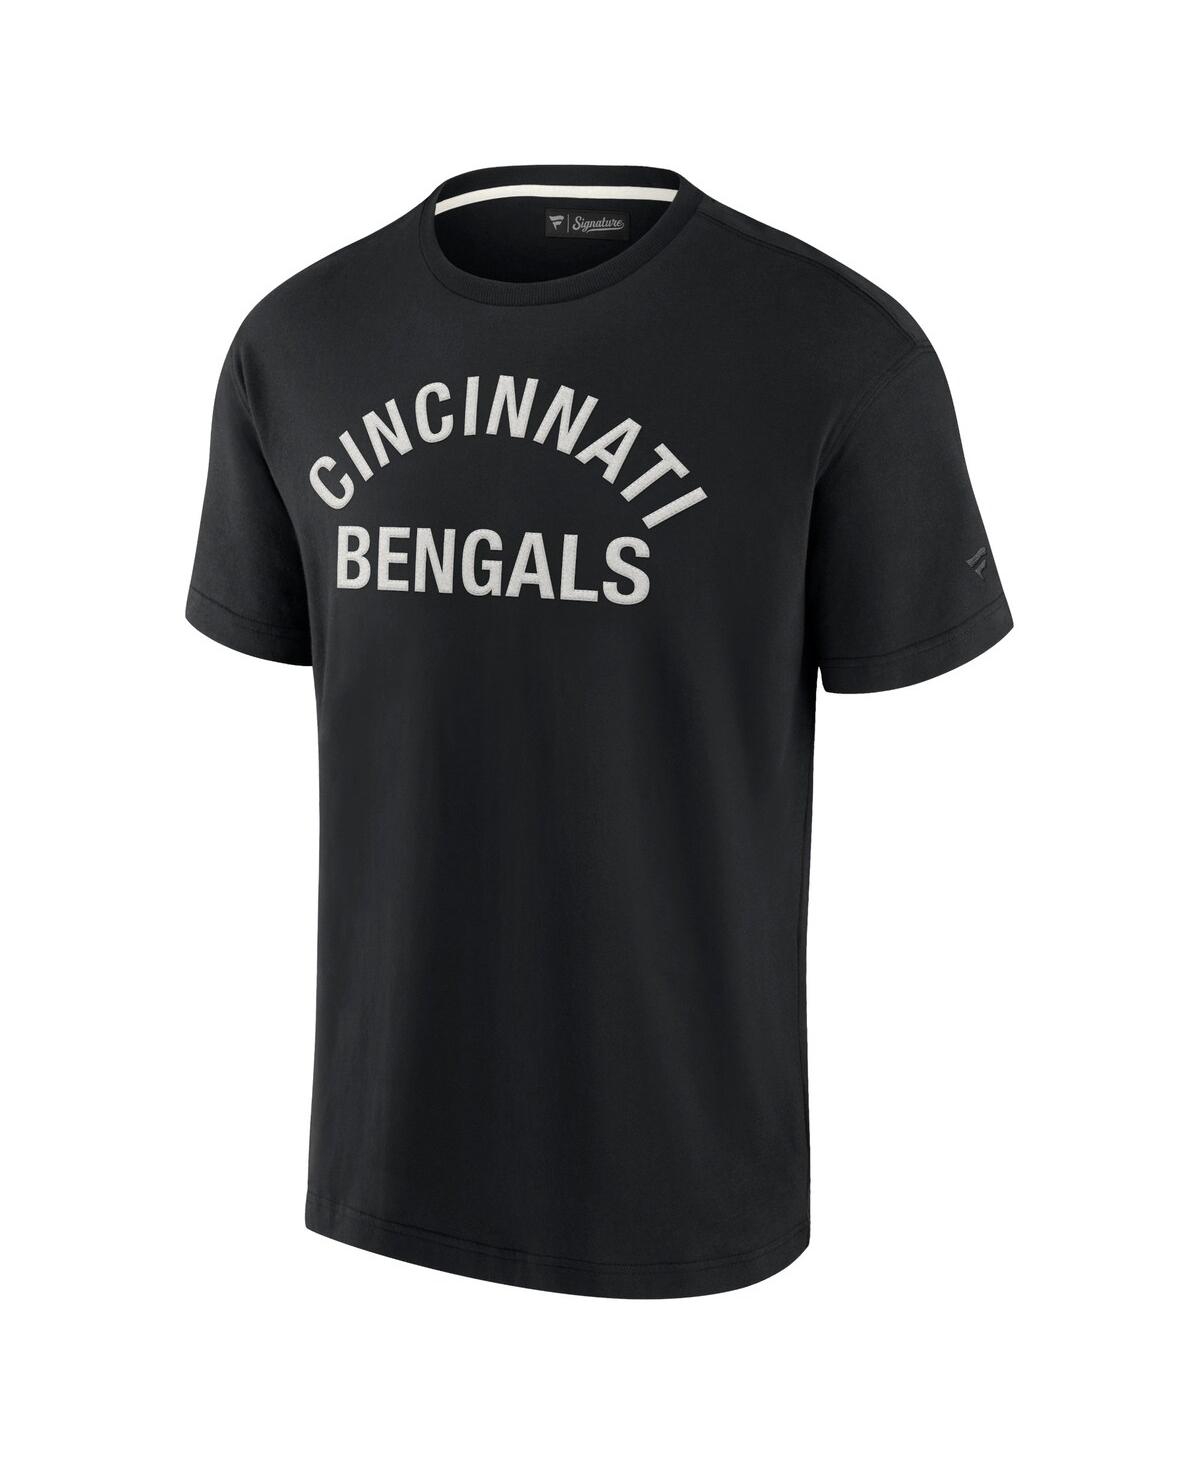 Shop Fanatics Signature Men's And Women's  Black Cincinnati Bengals Super Soft Short Sleeve T-shirt